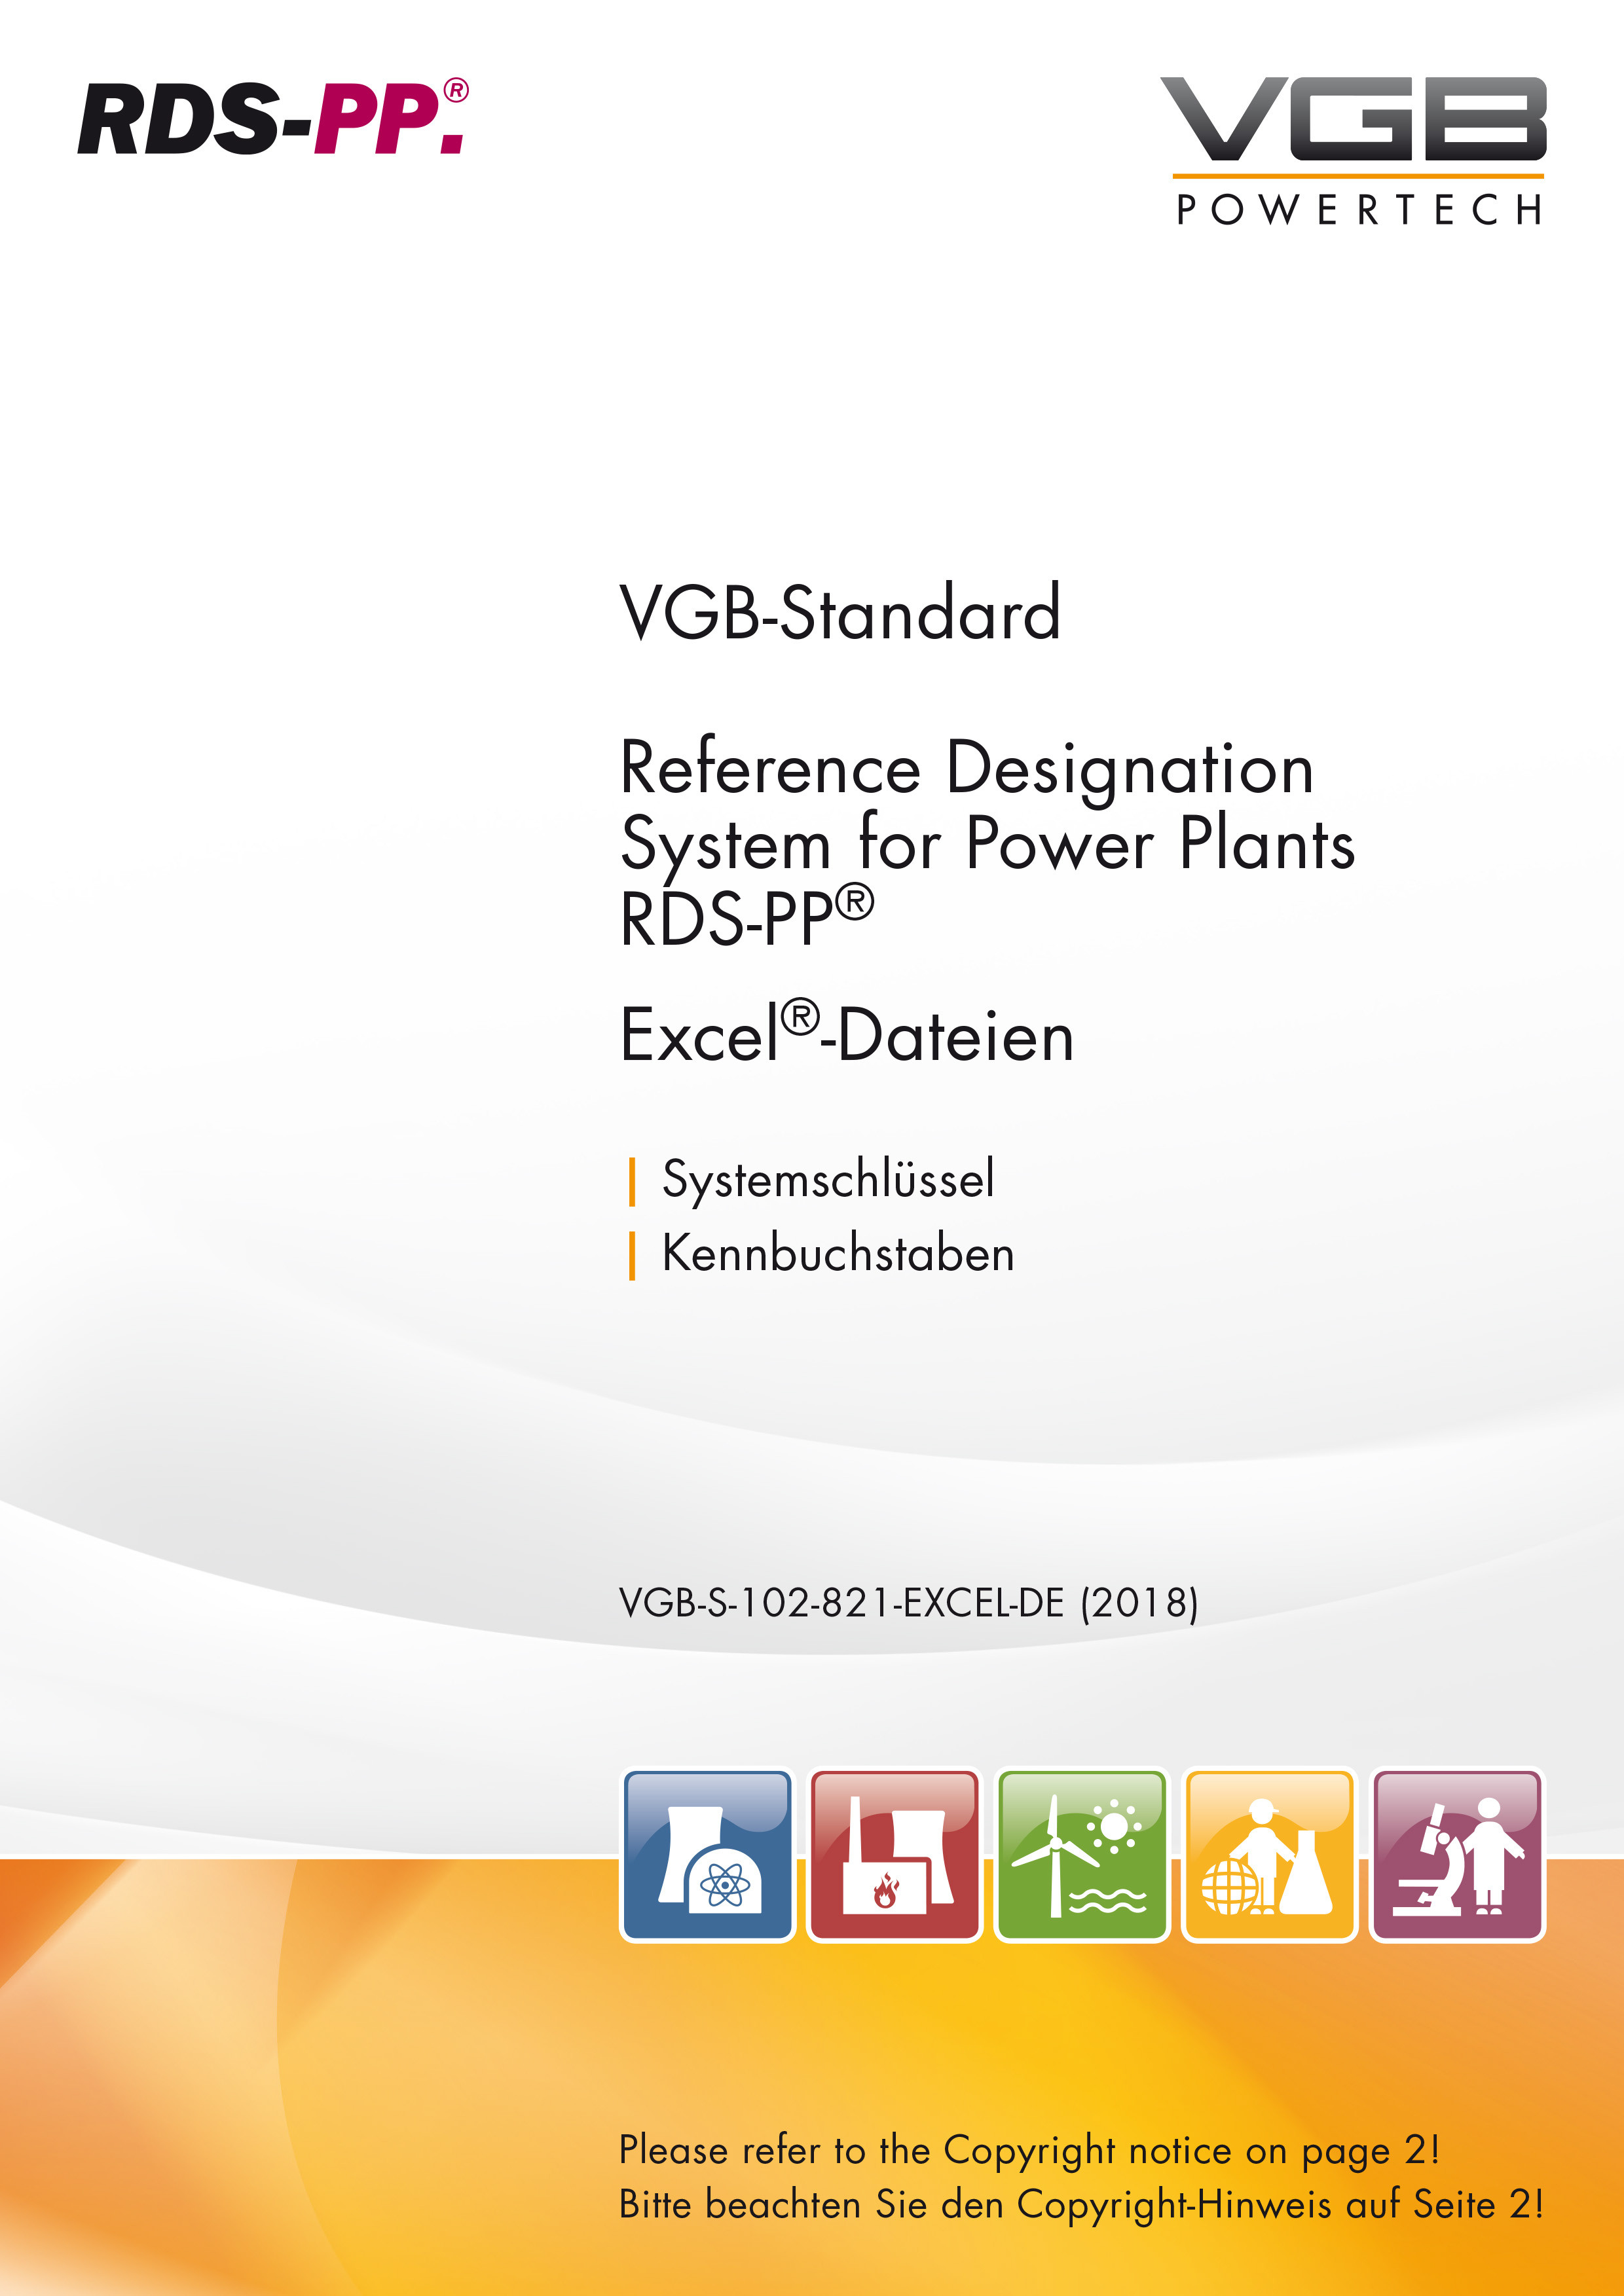 RDS-PP® Referenzkennzeichensystem für Kraftwerke - Kennbuchstaben für Kraftwerkssysteme (Systemschlüssel) - Excel-Liste (Deutschsprachige Version)